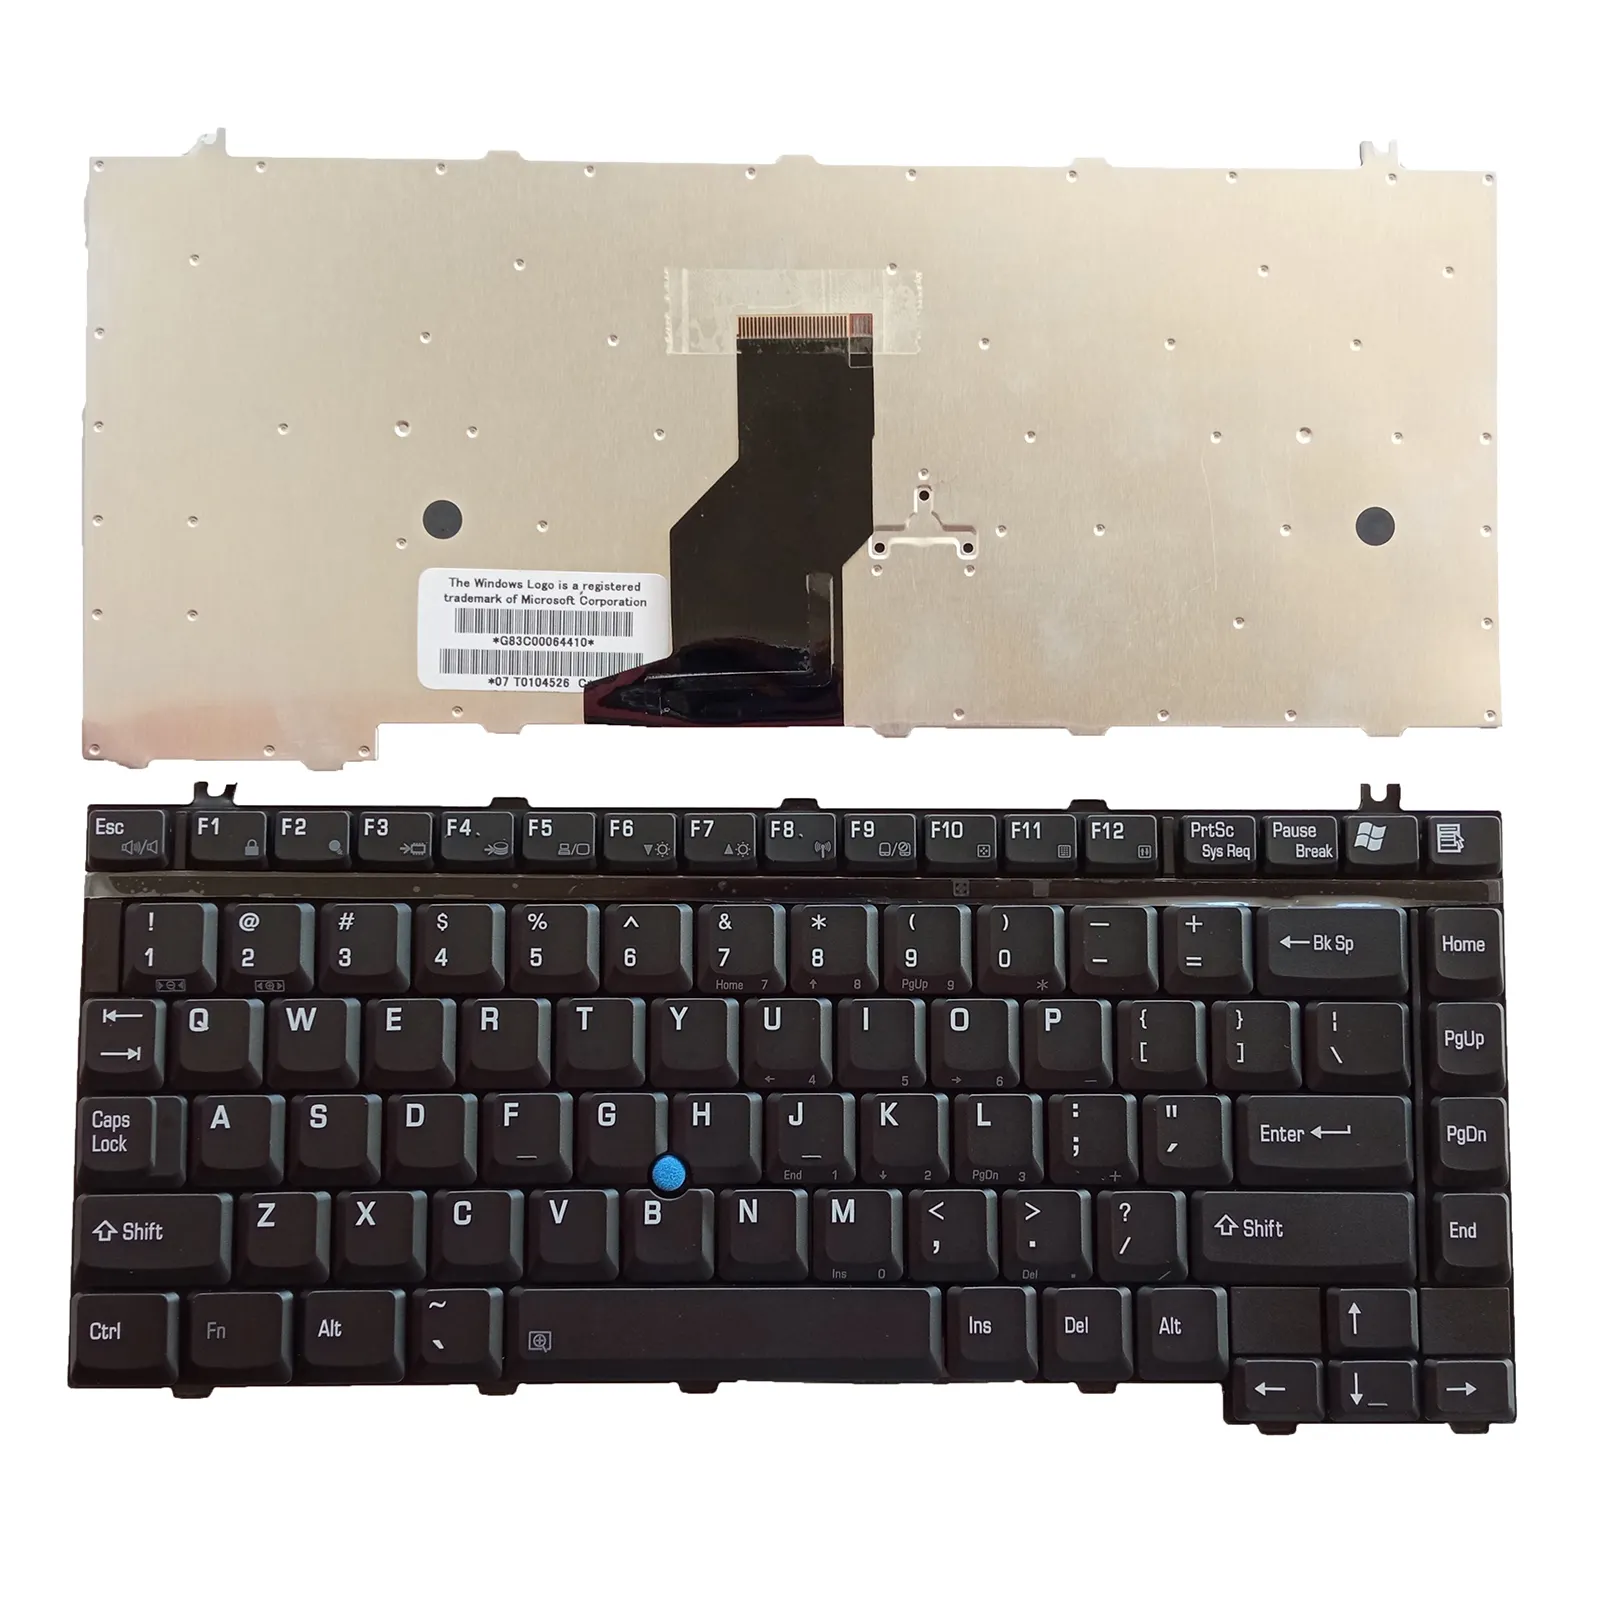 नई लैपटॉप कीबोर्ड के लिए तोशिबा सैटेलाइट A10 M20 अमेरिका संस्करण काले बिंदु के साथ